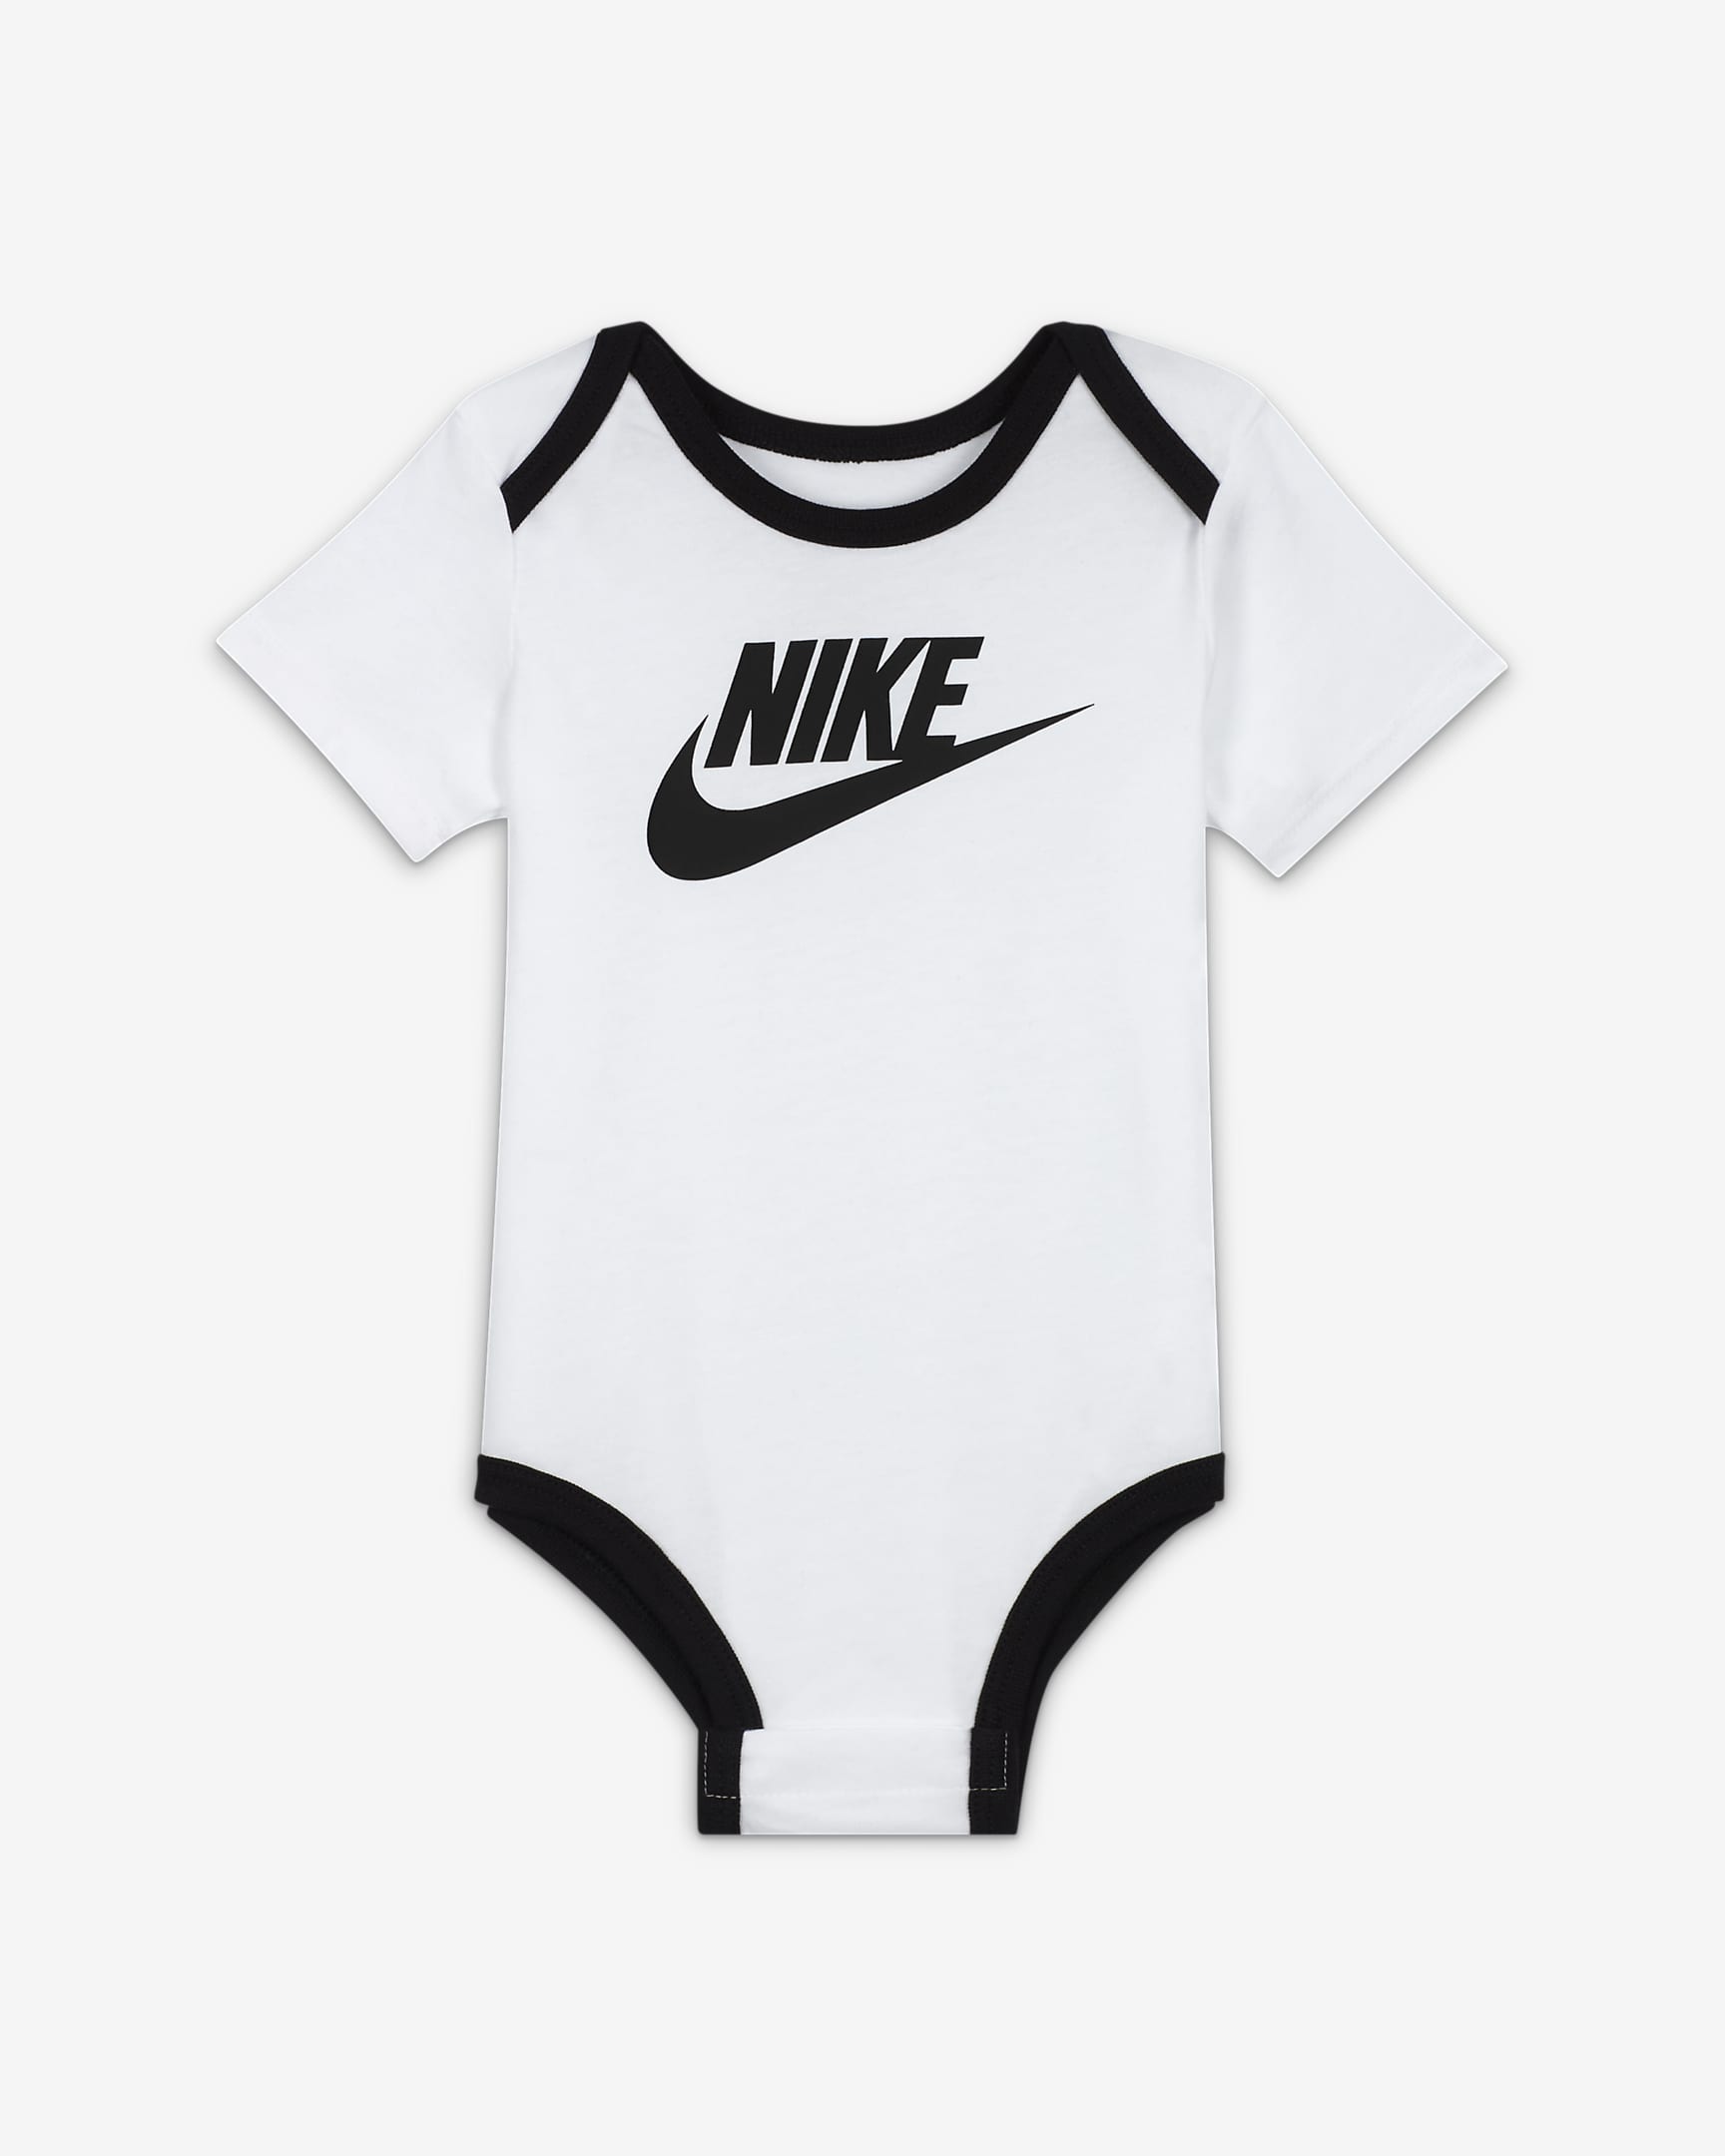 Nike Baby Bodysuit and Hat Box Set. Nike SE